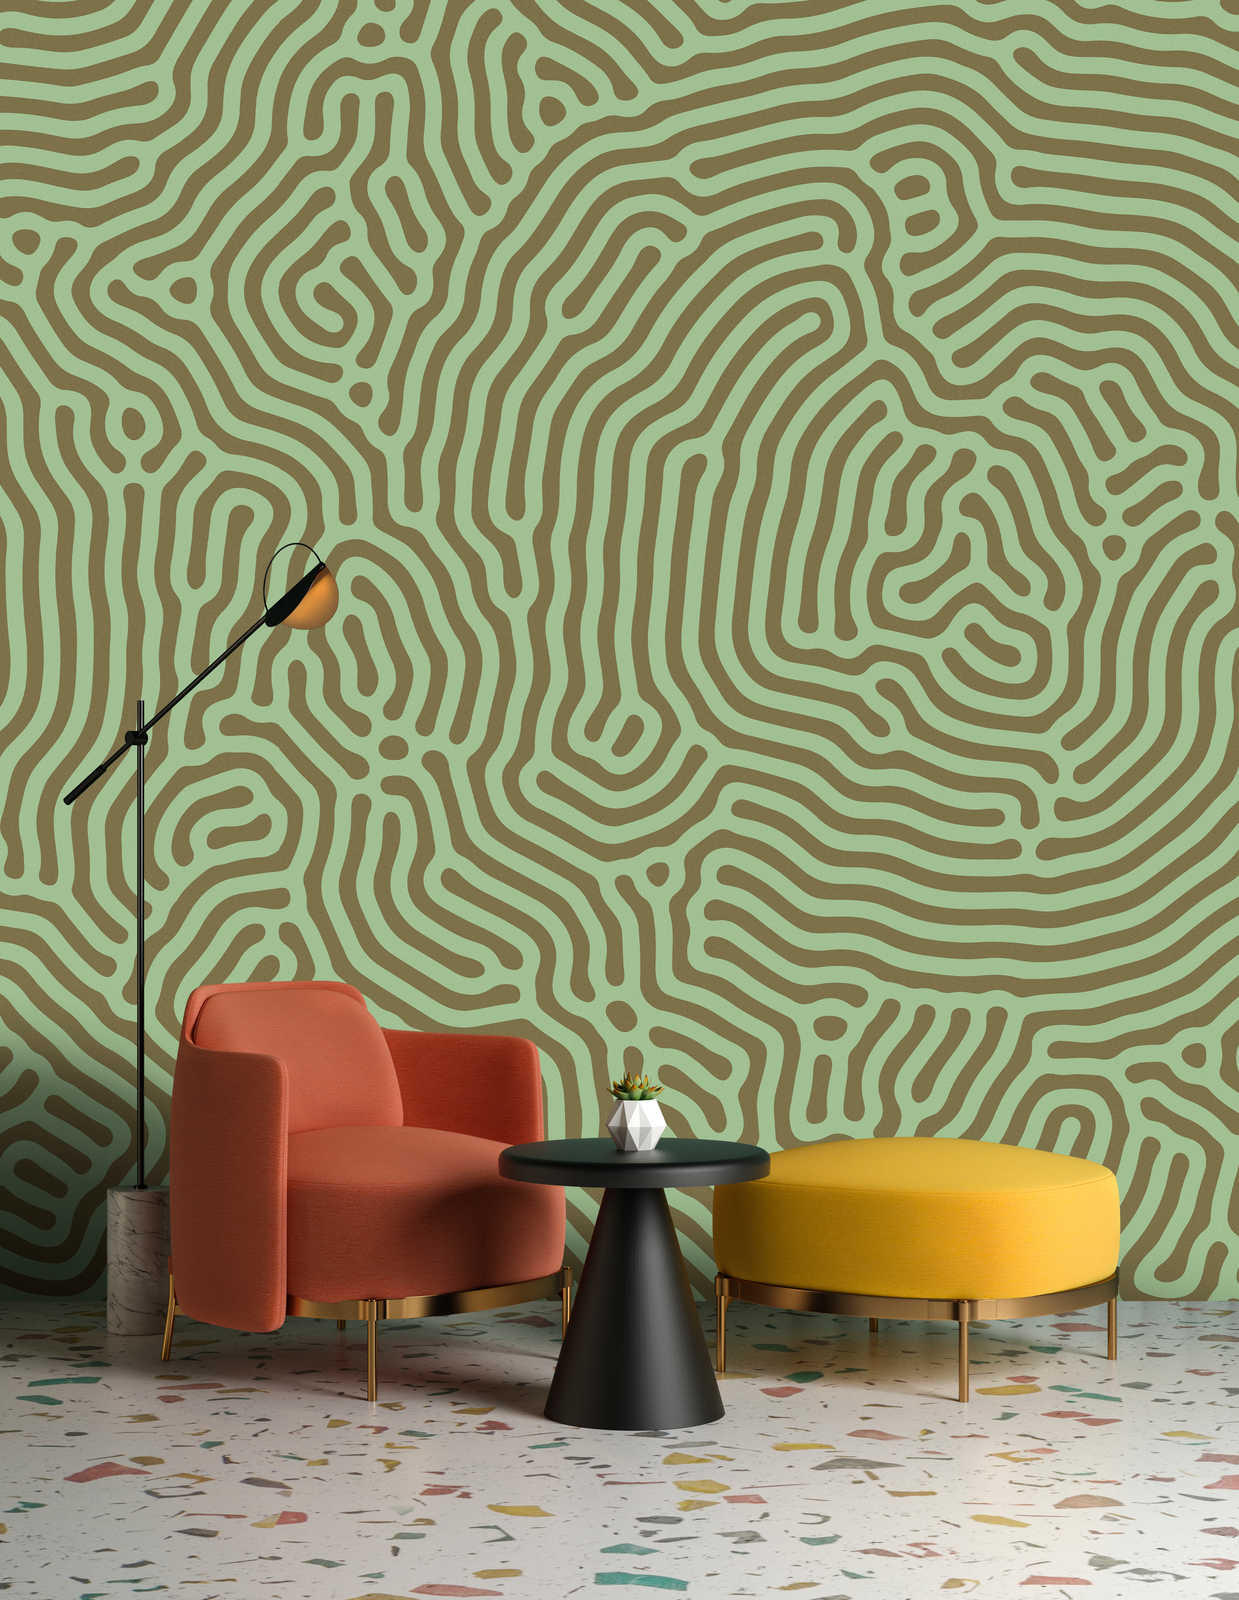             Sahel 1 – Grüne Fototapete Labyrinth Muster Salbeigrün
        